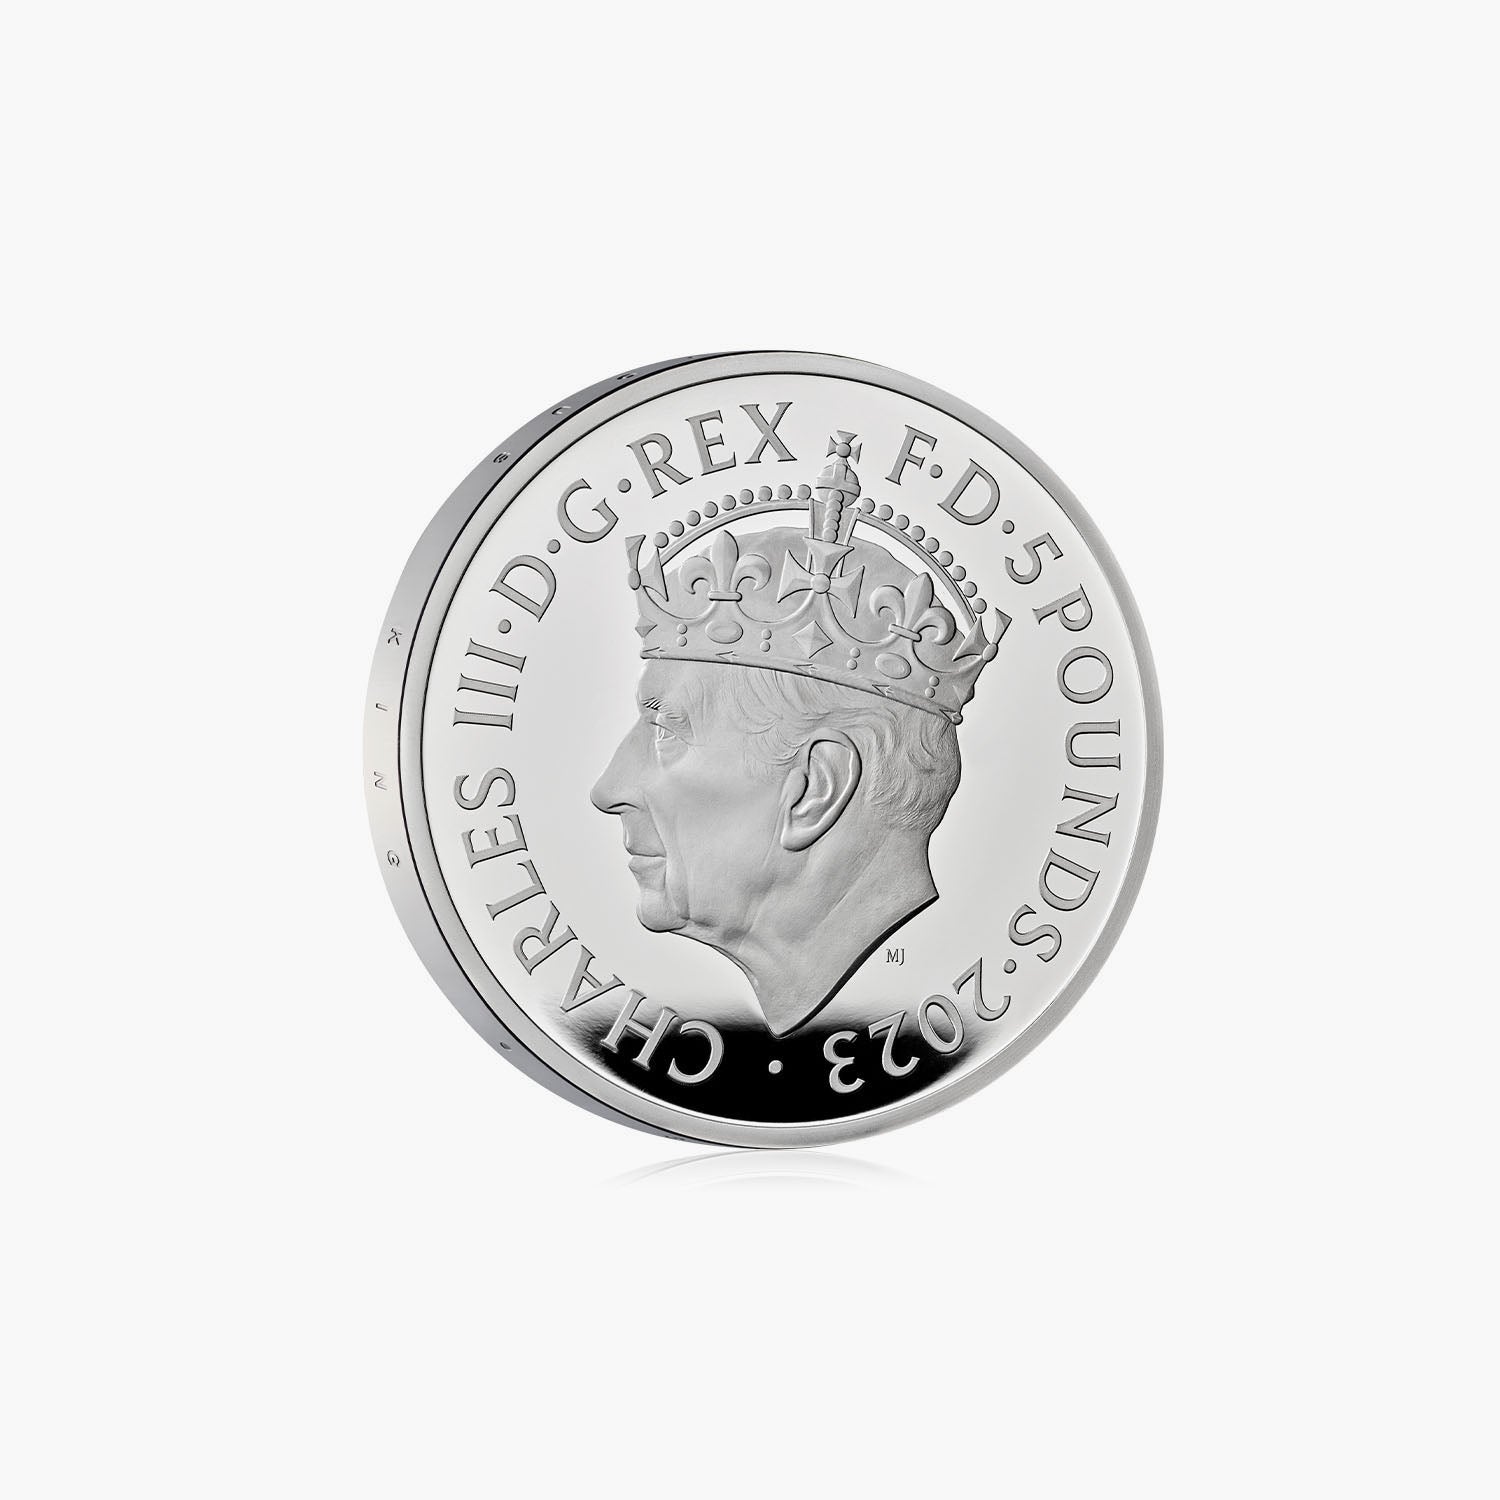 チャールズ国王陛下の戴冠式 £5.00 シルバー プルーフ